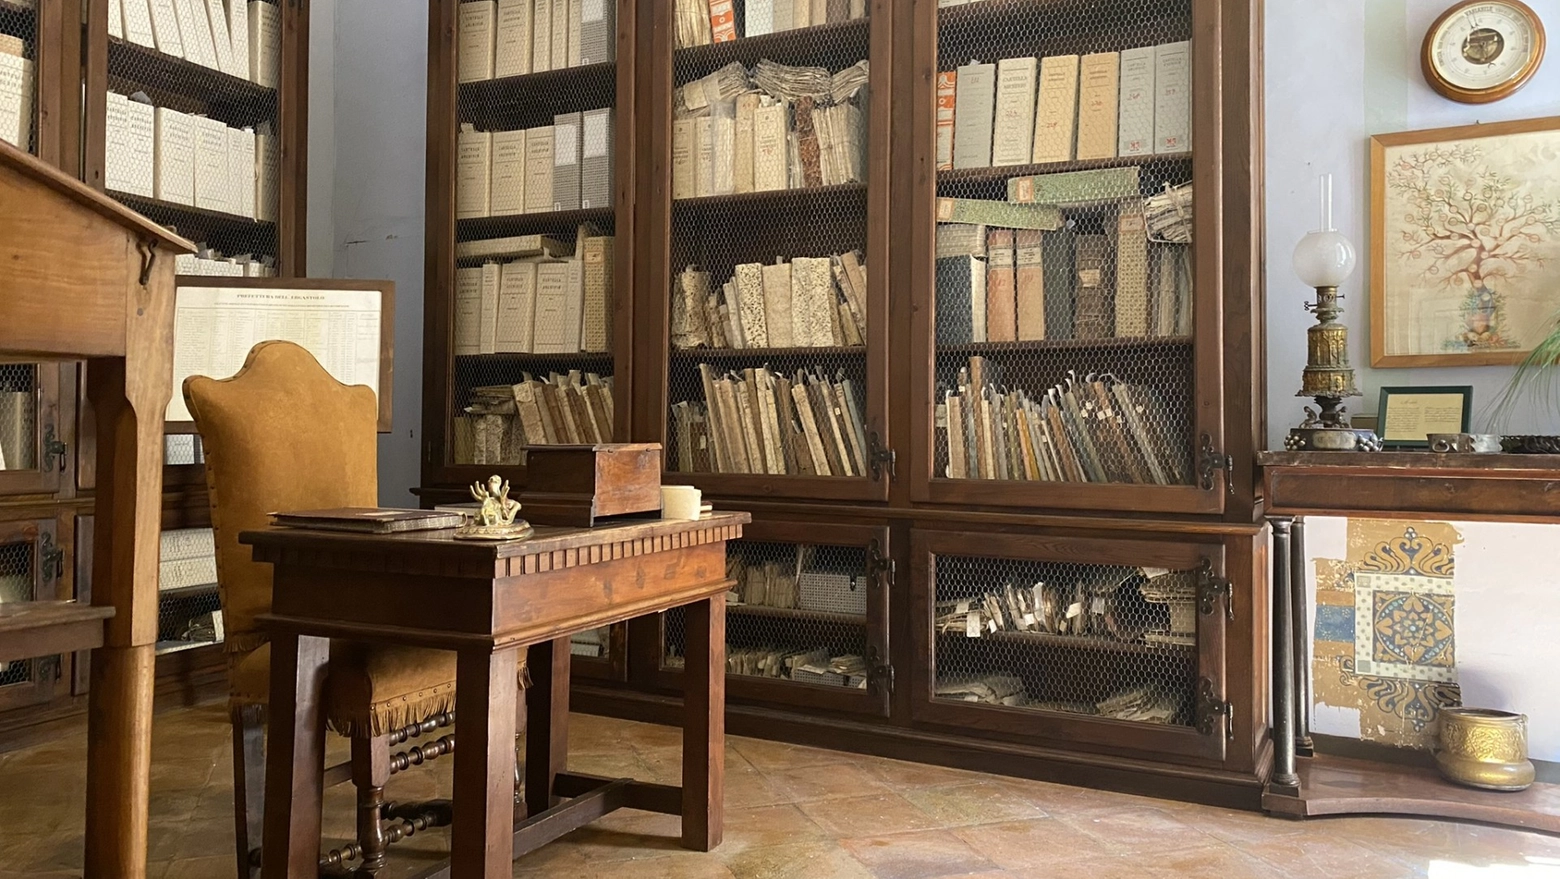 Sabato 7 ottobre la Biblioteca Mozzi Borgetti di Macerata e Palazzo Castiglioni di Cingoli saranno protagonisti per le Marche dell’apertura nazionale di biblioteche e archivi privati, fondazioni e musei